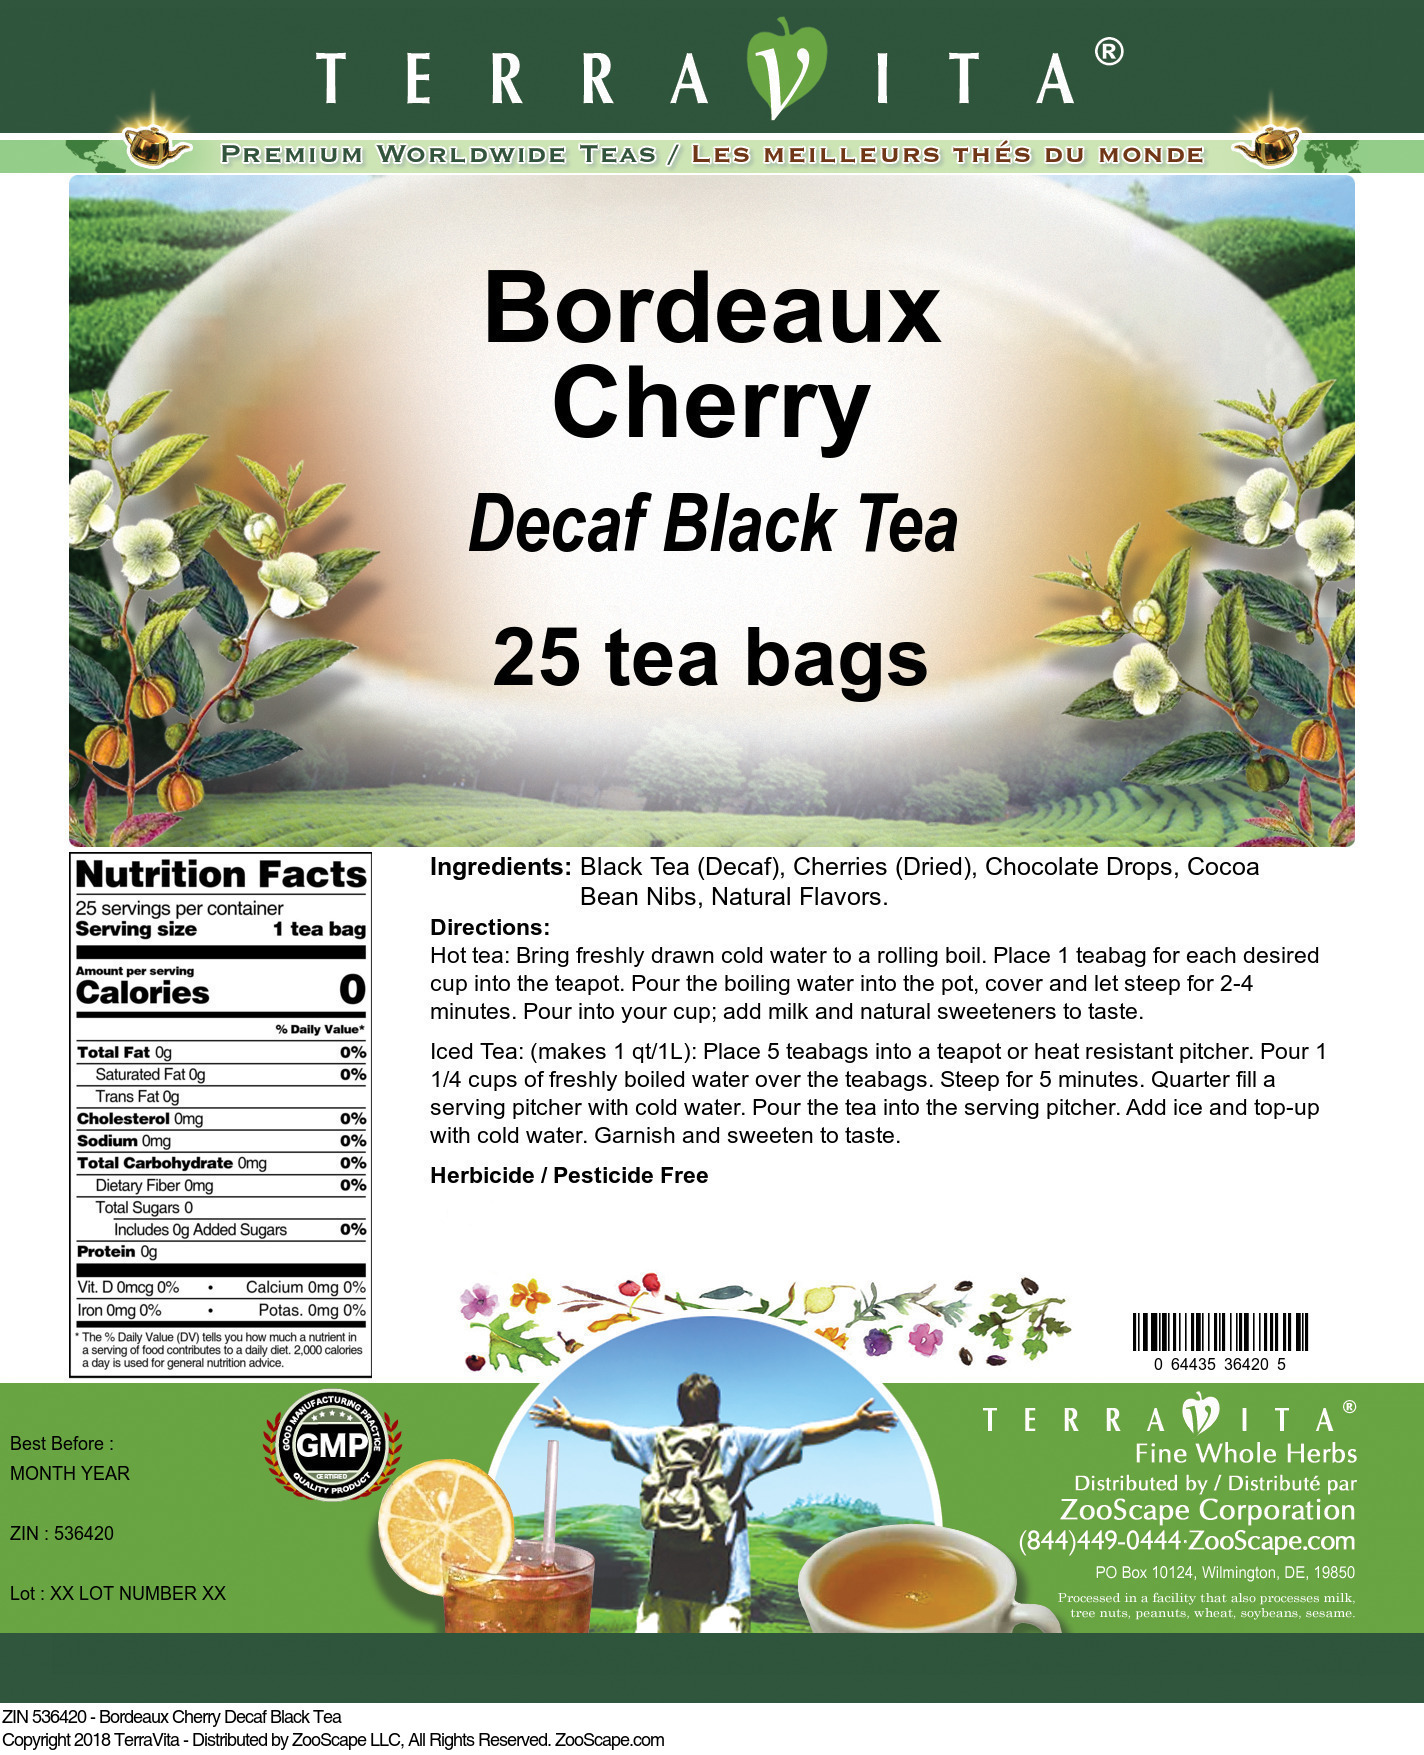 Bordeaux Cherry Decaf Black Tea - Label